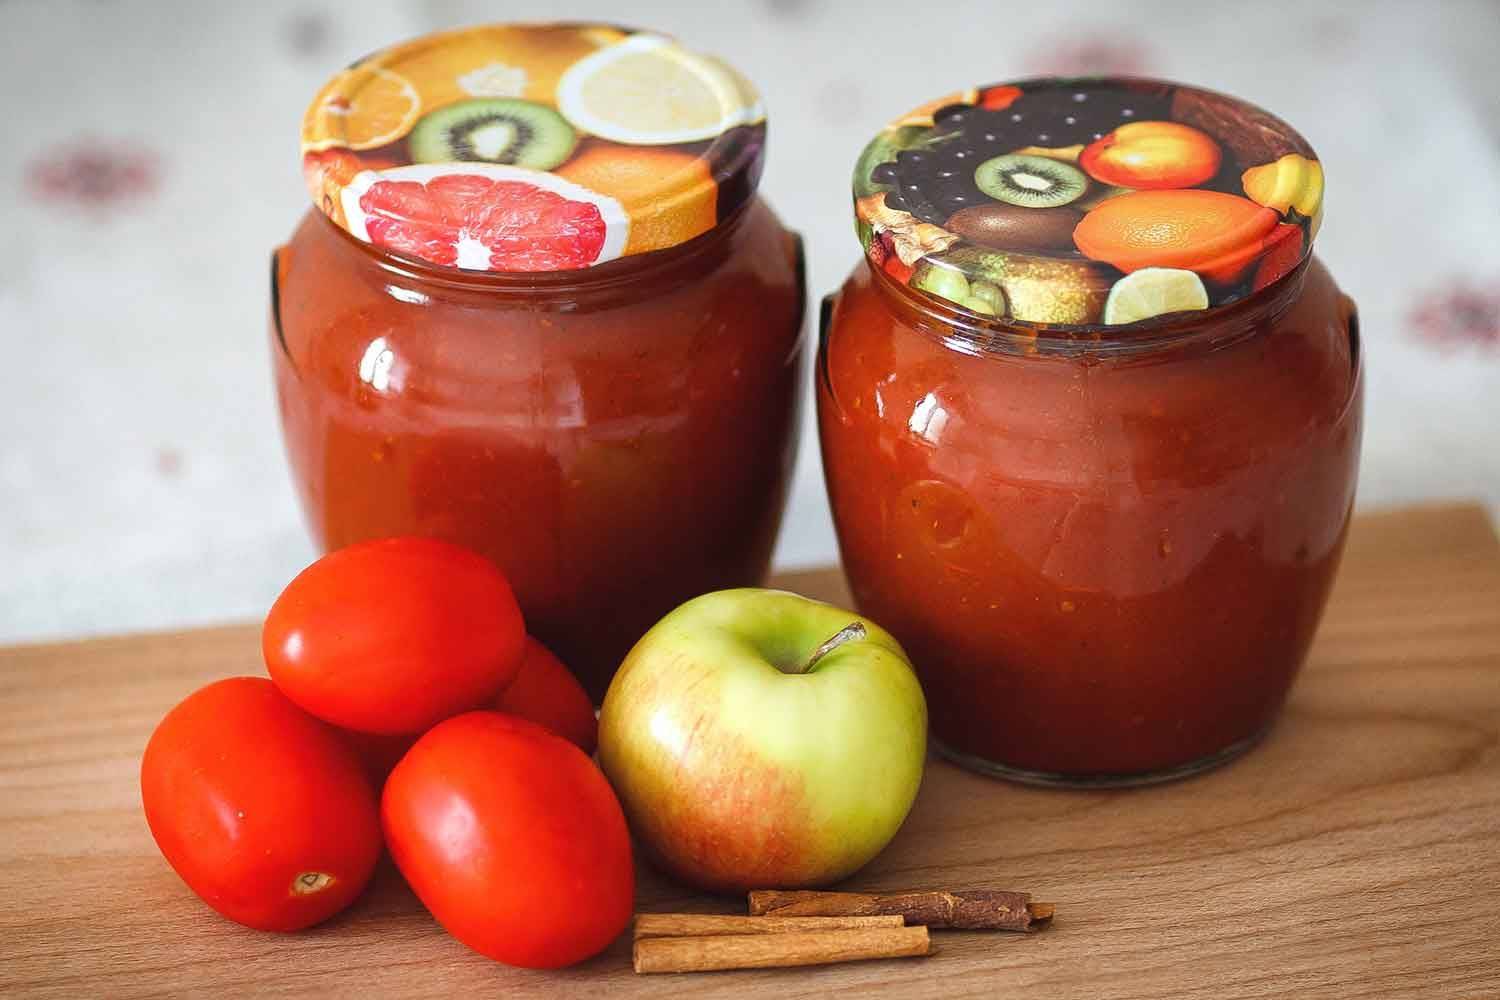 Сладкие помидоры на зиму в литровой и 3-литровой банке: самые вкусные рецепты. плюс супер-рецепт сладкой засолки помидоров — такого вы еще не ели!